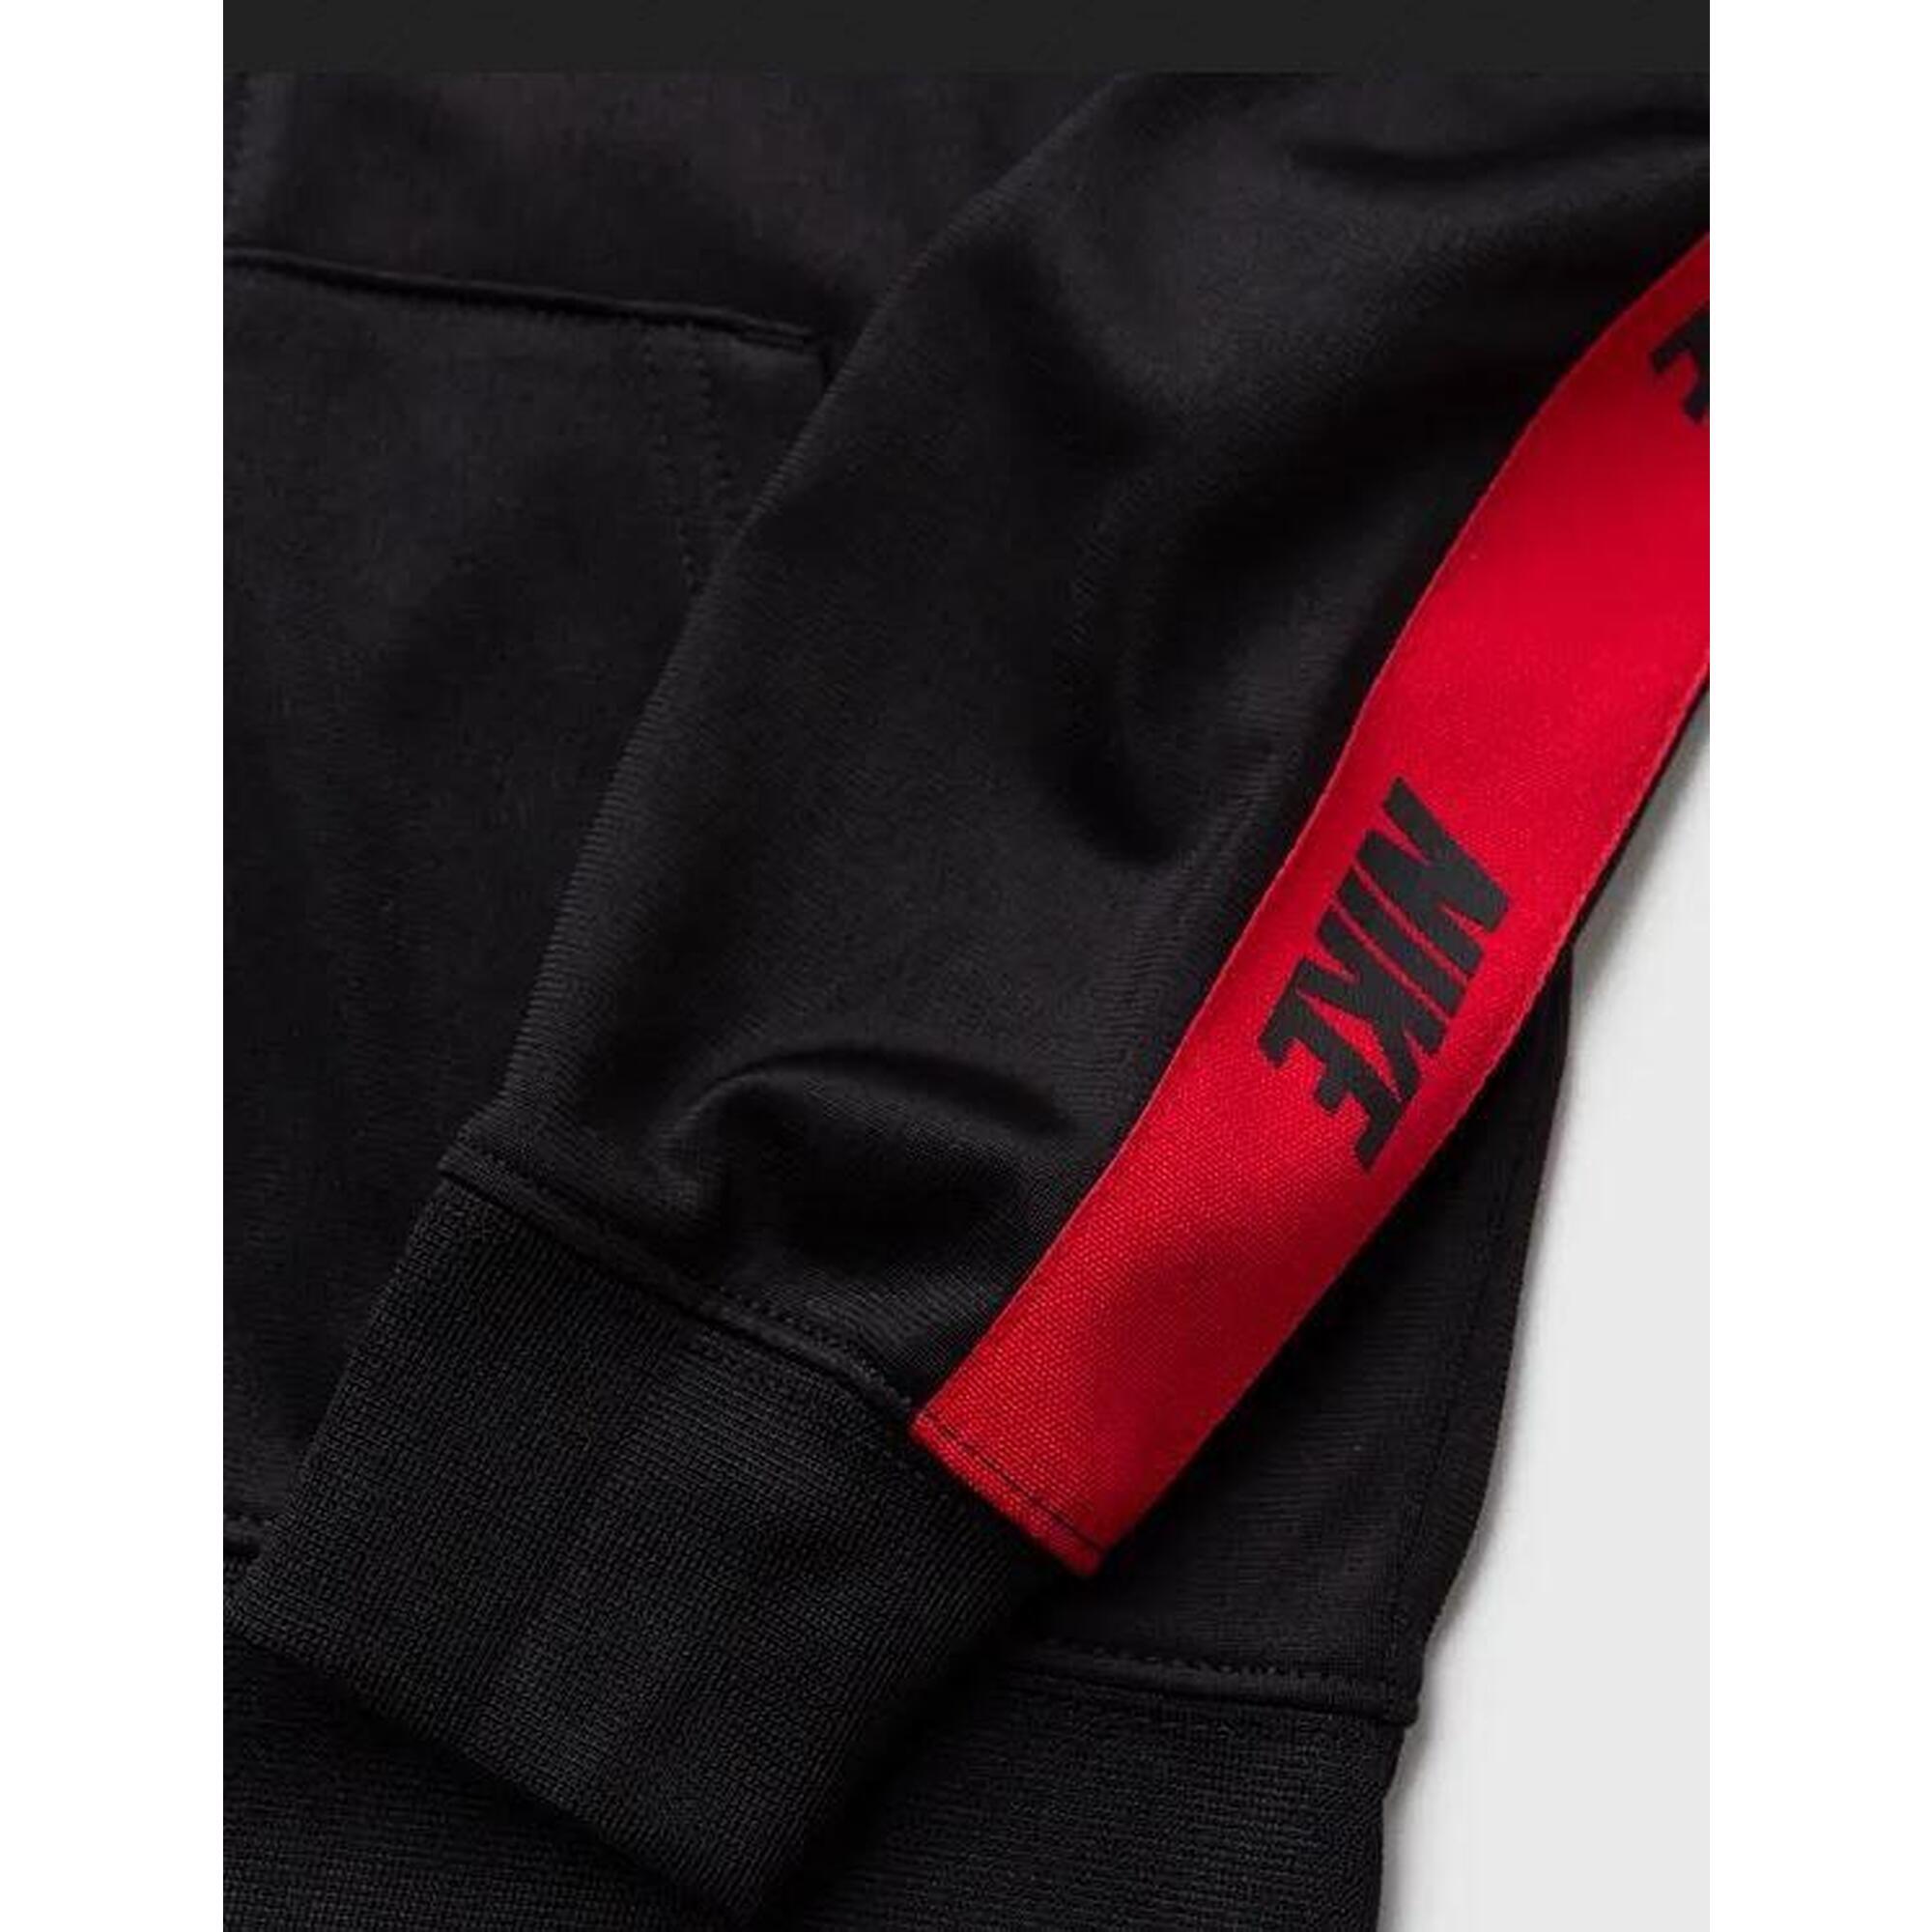 Tuta bambino nike sportswear logo - nero/rosso in poliestere